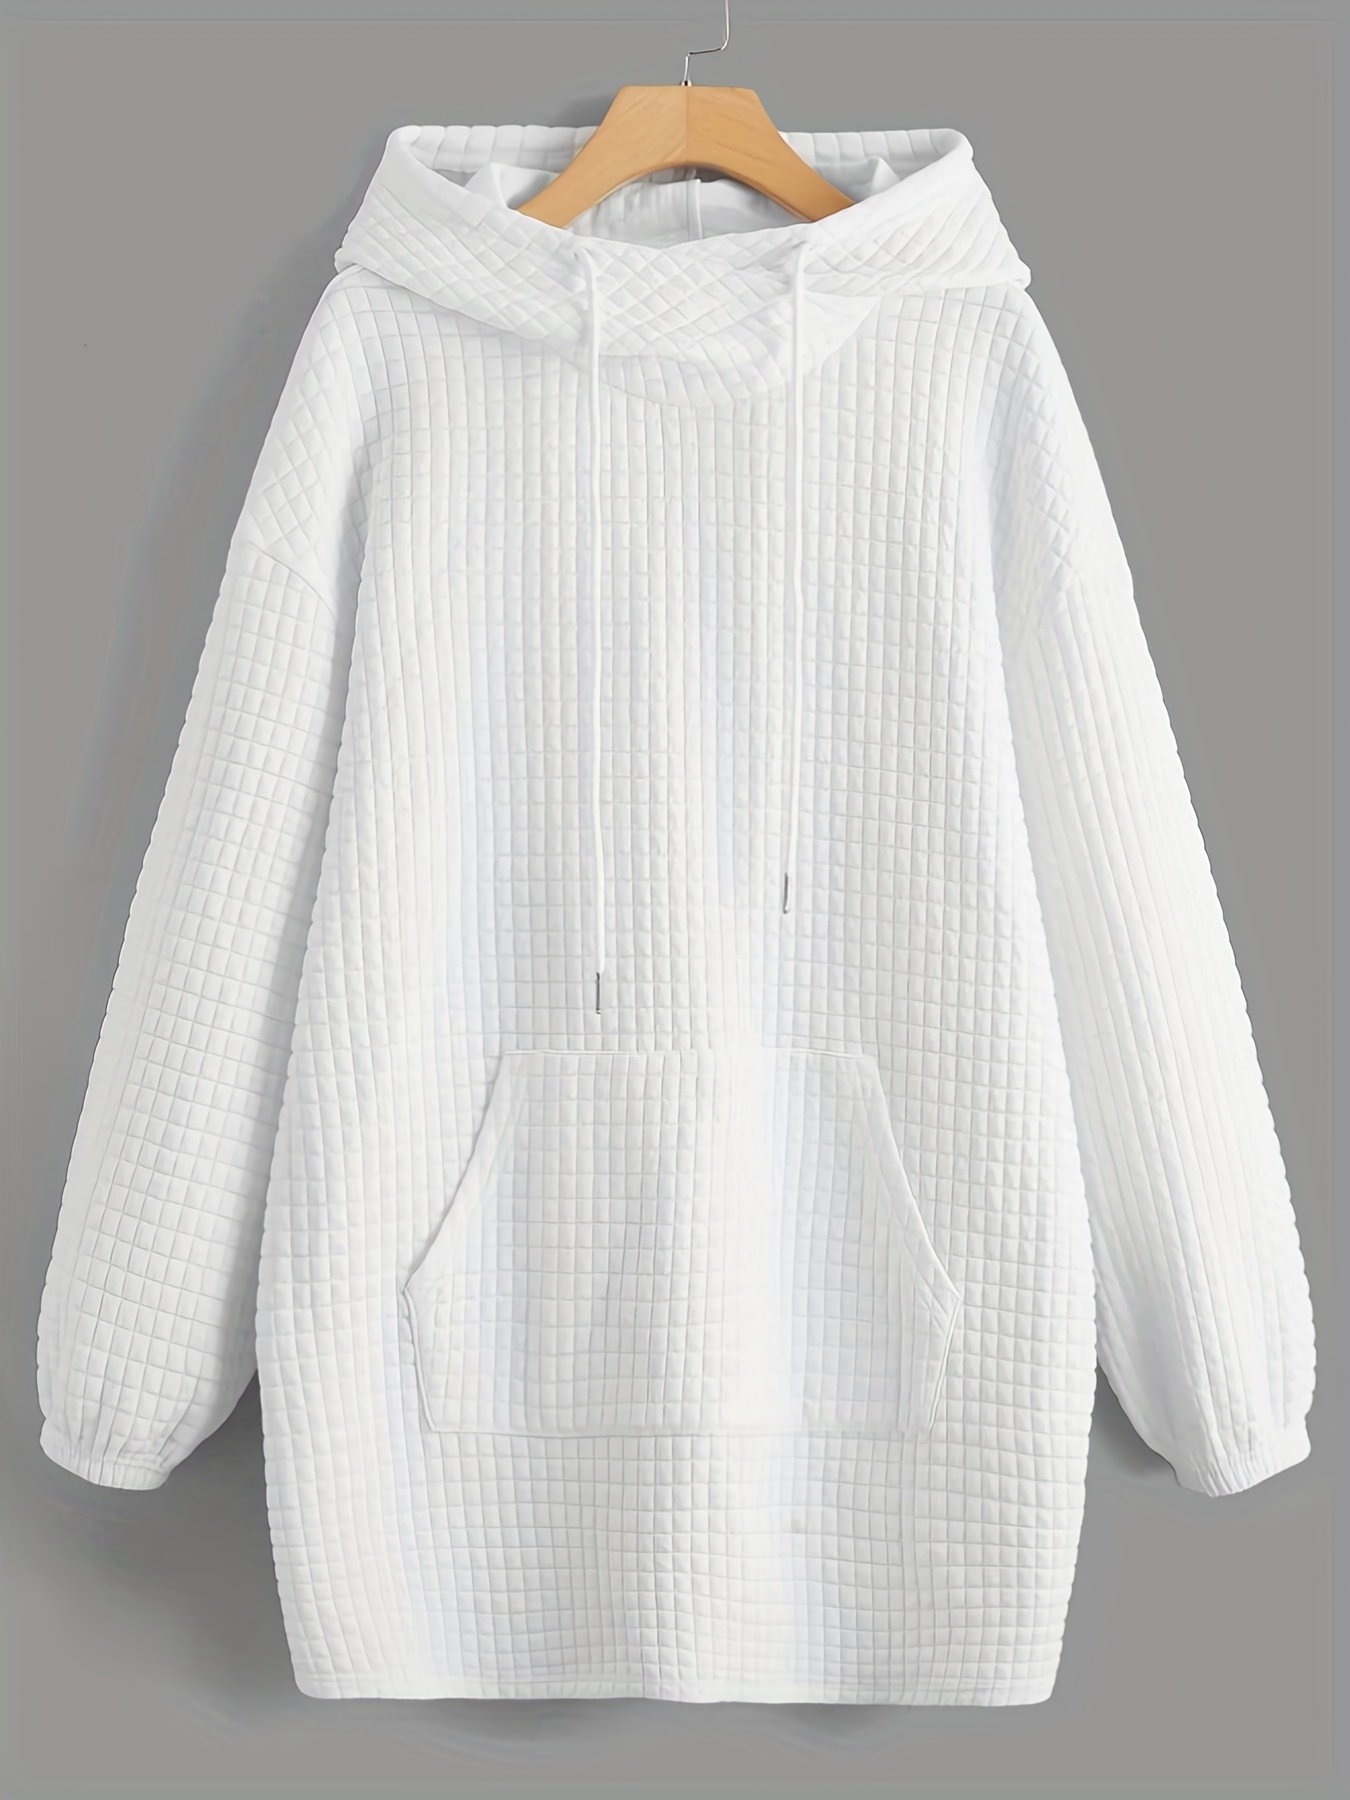 waffle grid kangaroo pocket hoodie casual long sleeve drawstring hoodie sweatshirt womens clothing details 1